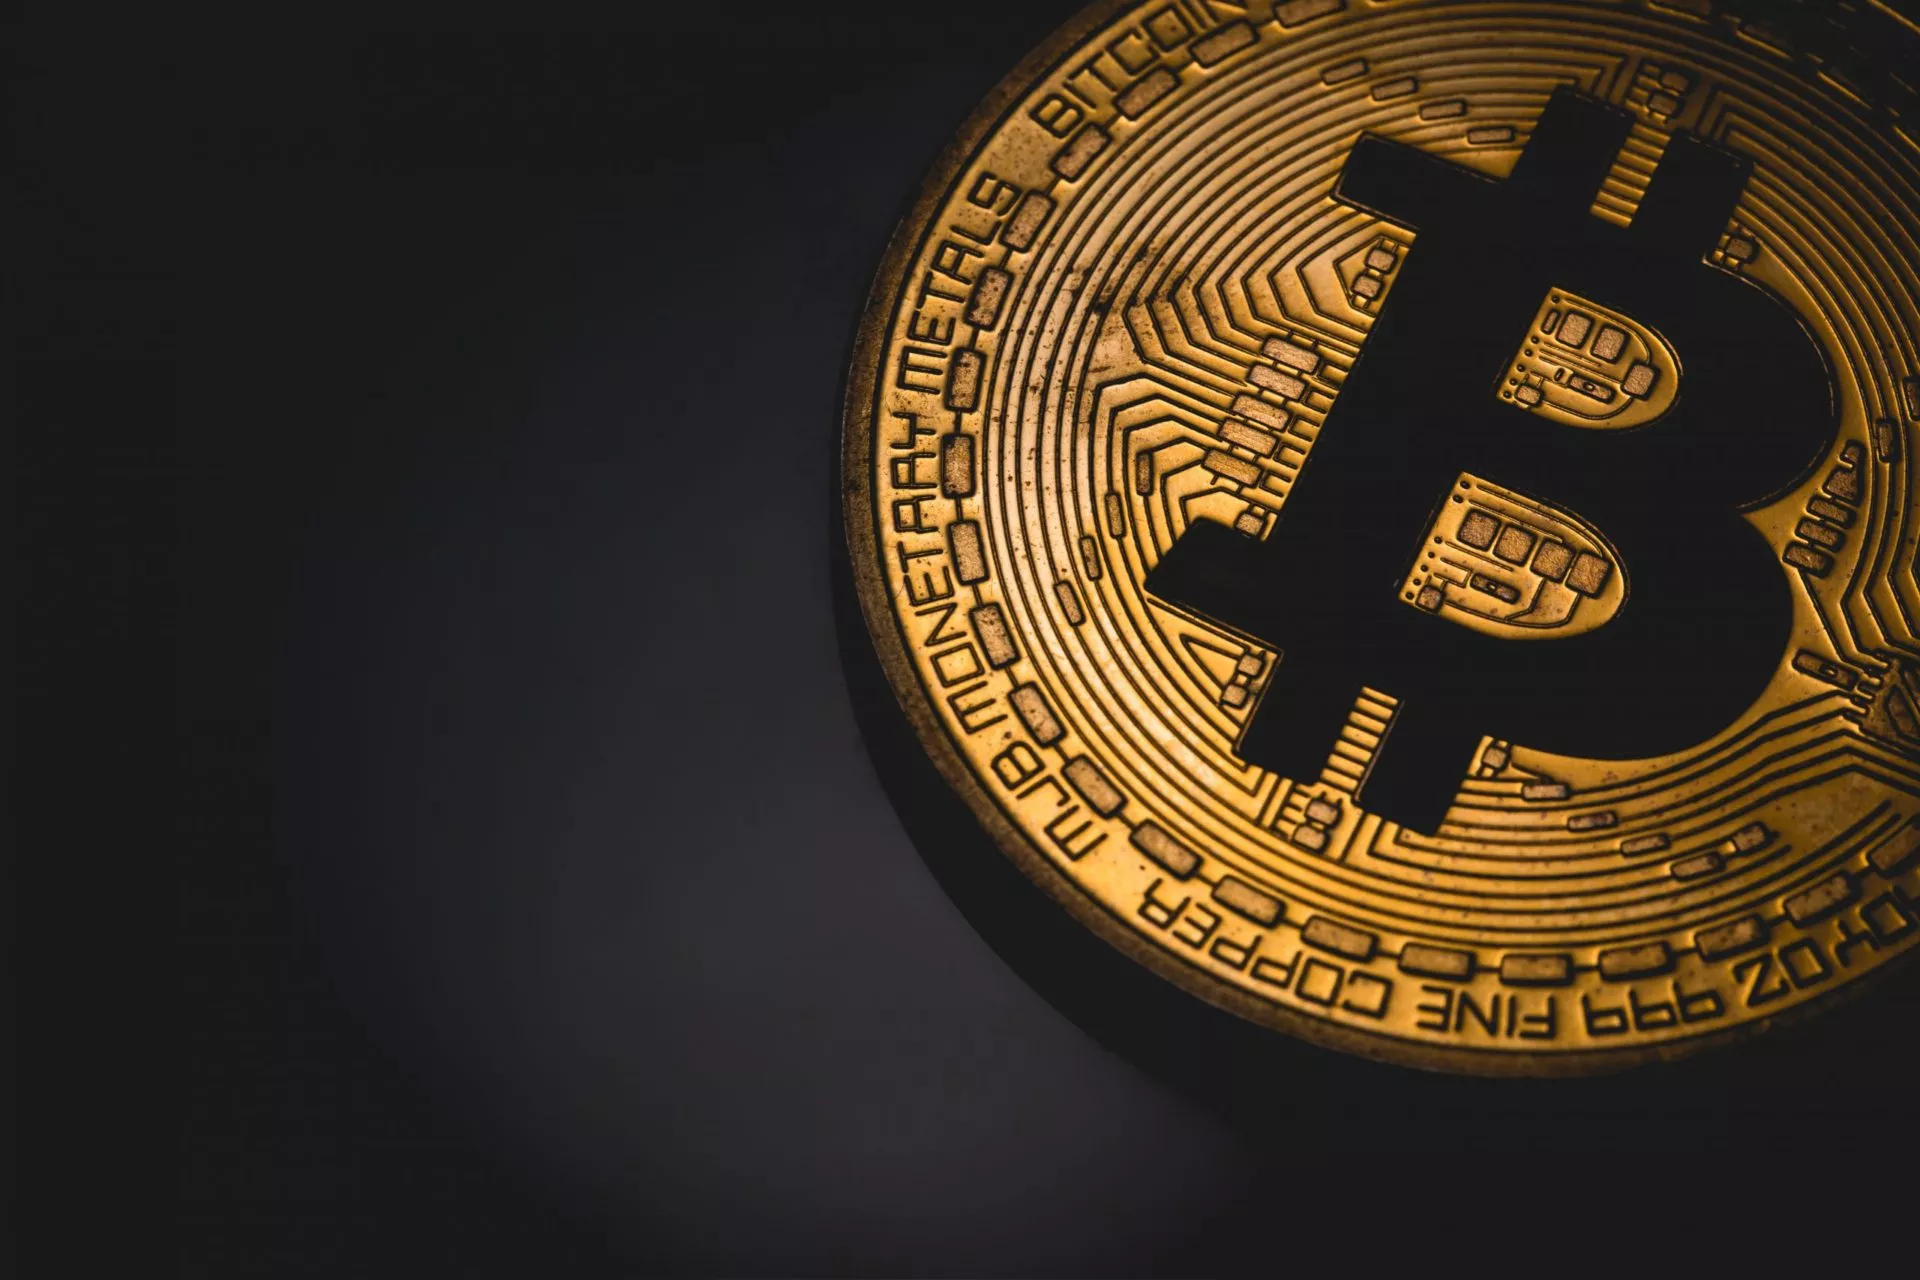 Pro-Bitcoin Senator Lummis met voorstel voor nieuwe regulator voor cryptocurrency